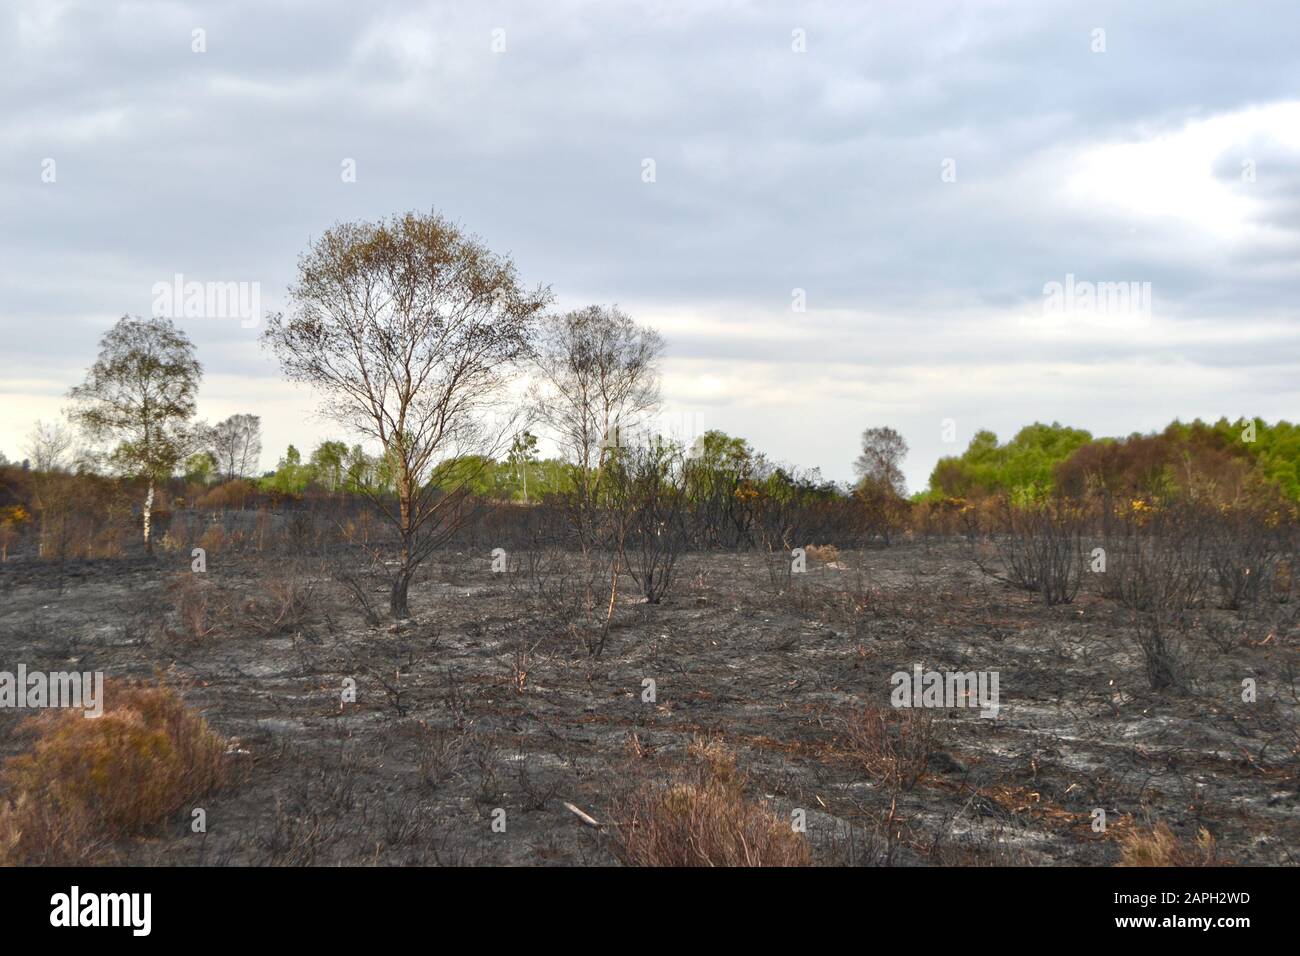 Die verbrannten, verkohlten Überreste von Bäumen, Büschen und Gräsern in einer Heide oder Moorlandschaft (altmodischer europäischer Wald) nach einem wilden Feuer. Stockfoto